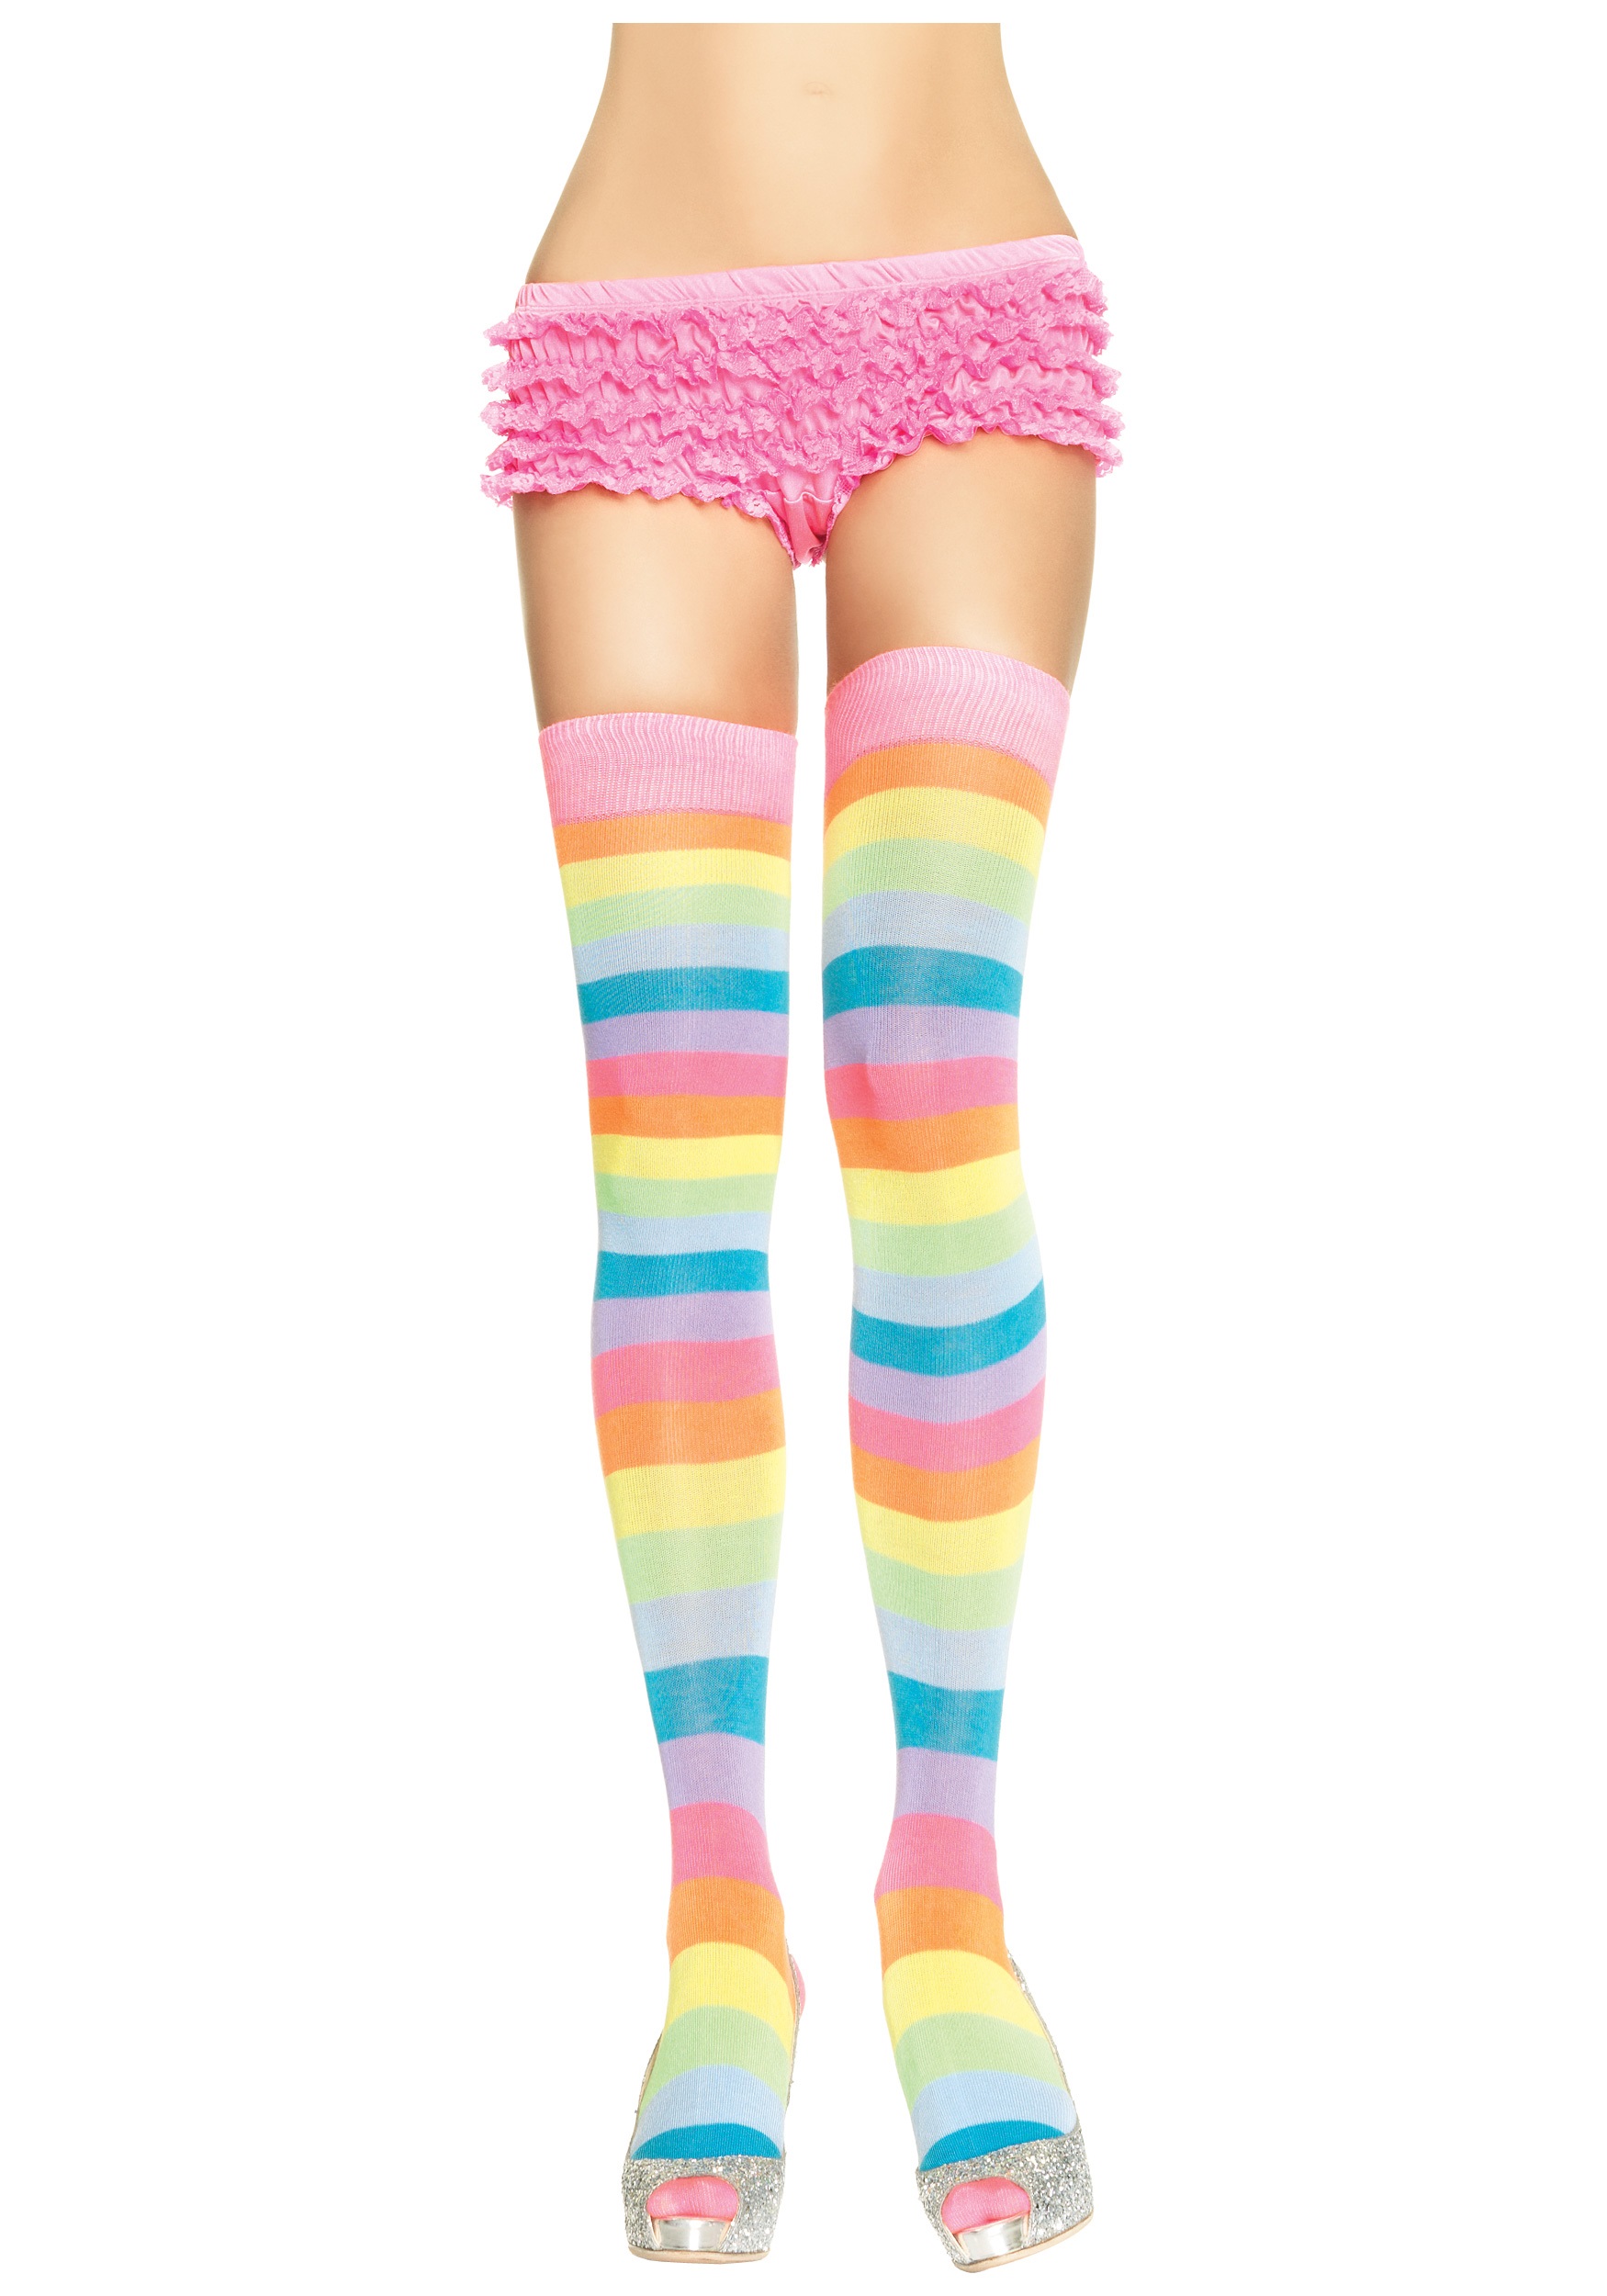 Women’s Neon Rainbow Thigh High Stockings